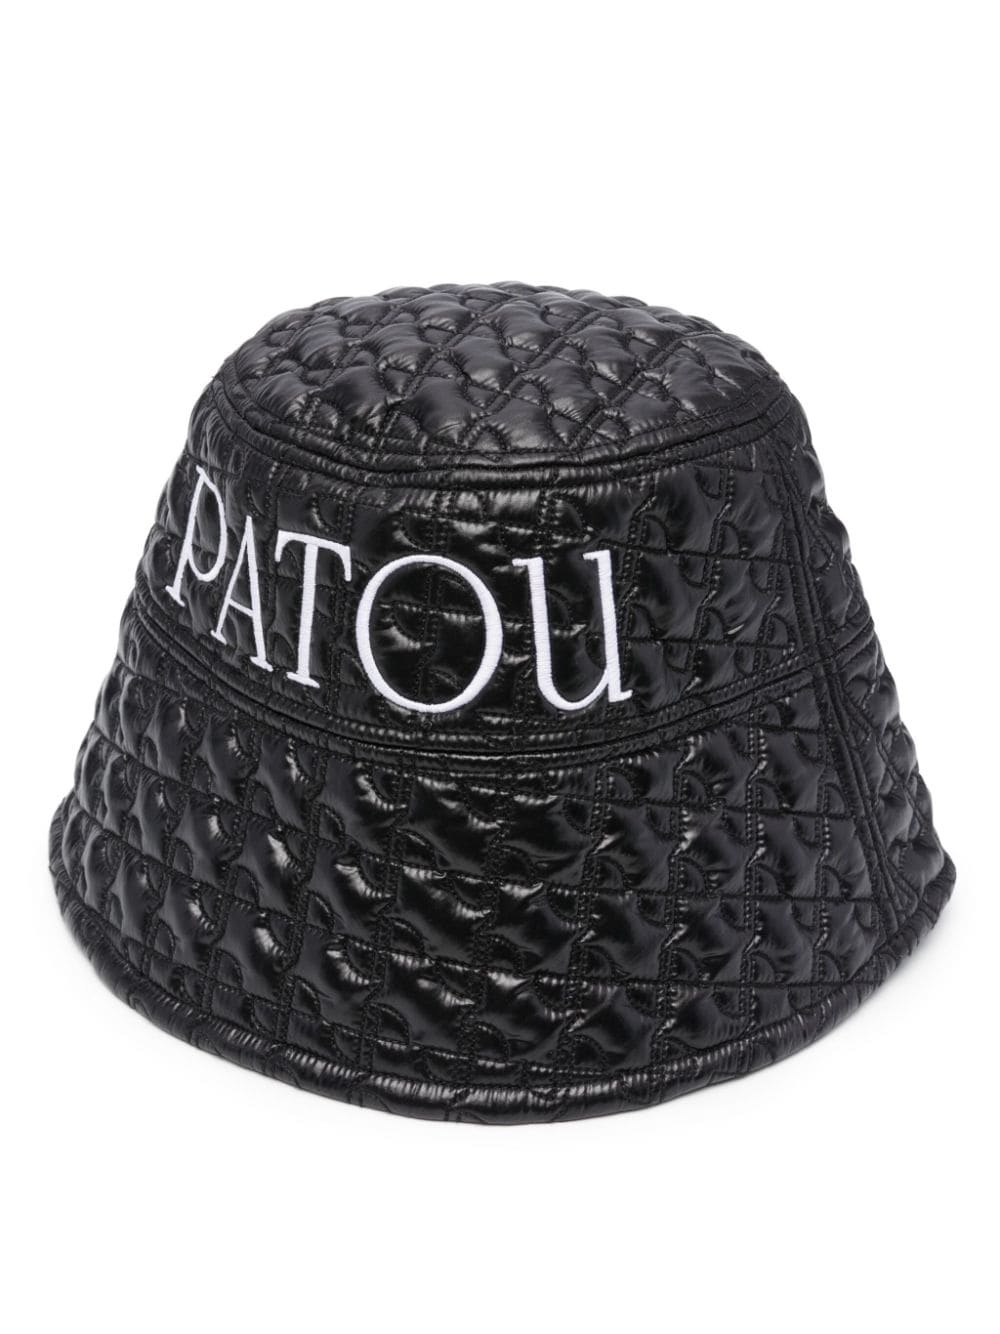 Shop Patou Bucket Hat